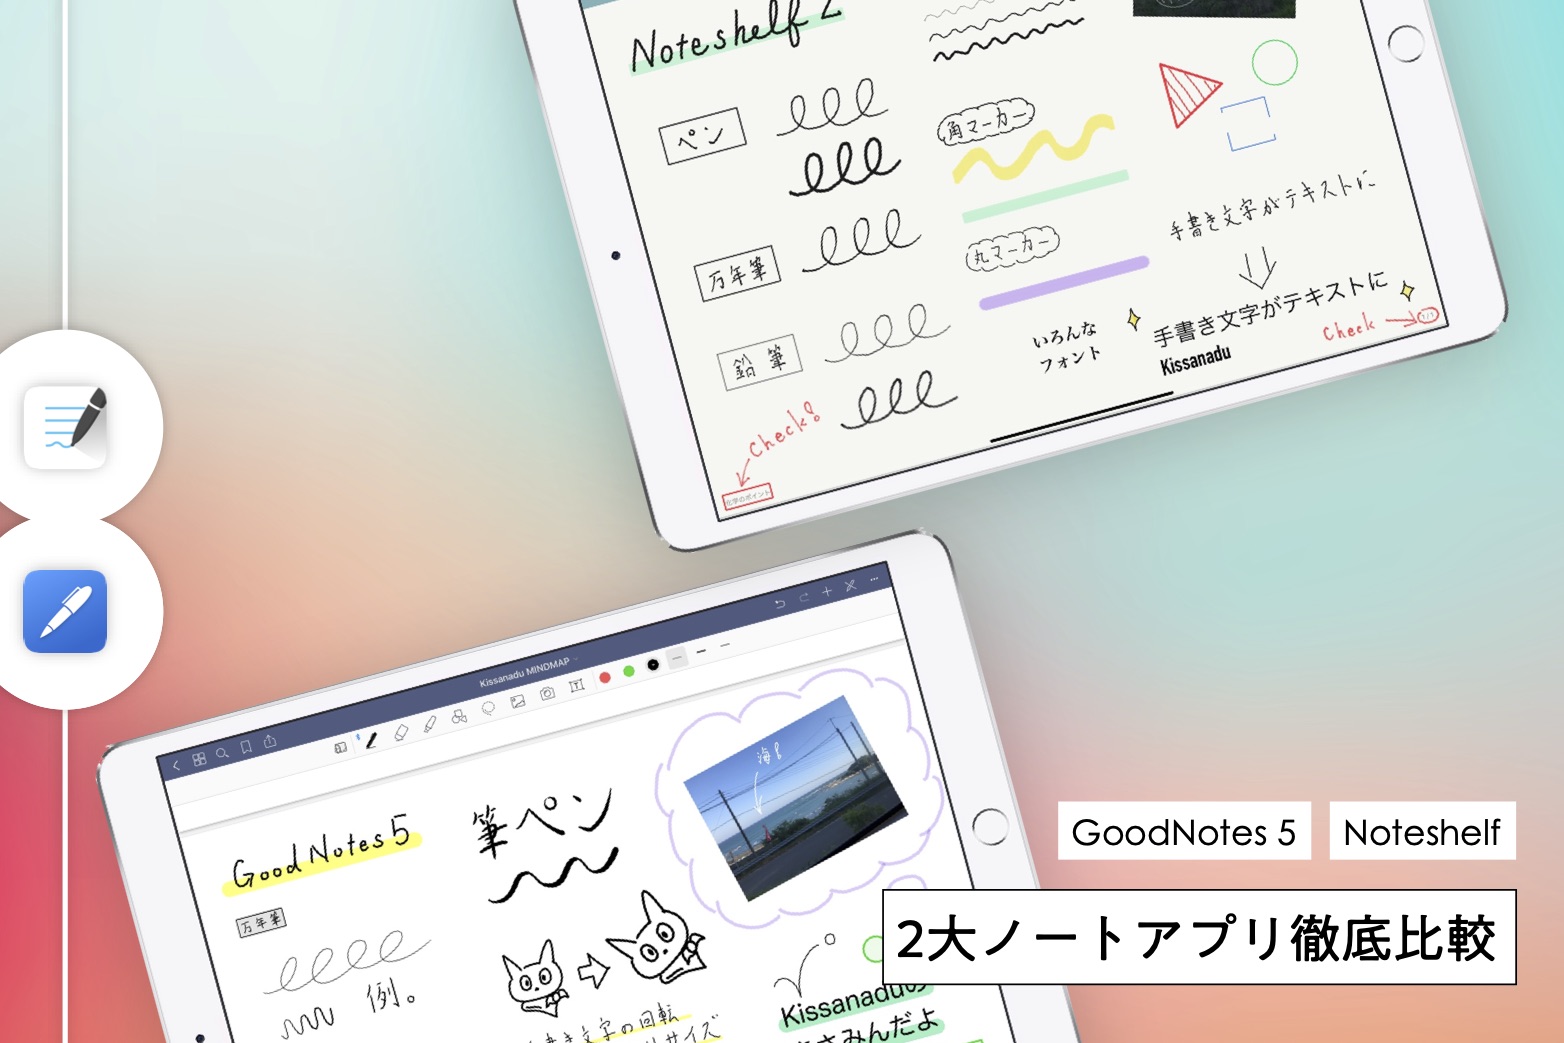 Ipad手書きノートアプリの定番 Noteshelf 2 と Goodnotes 5 の共通